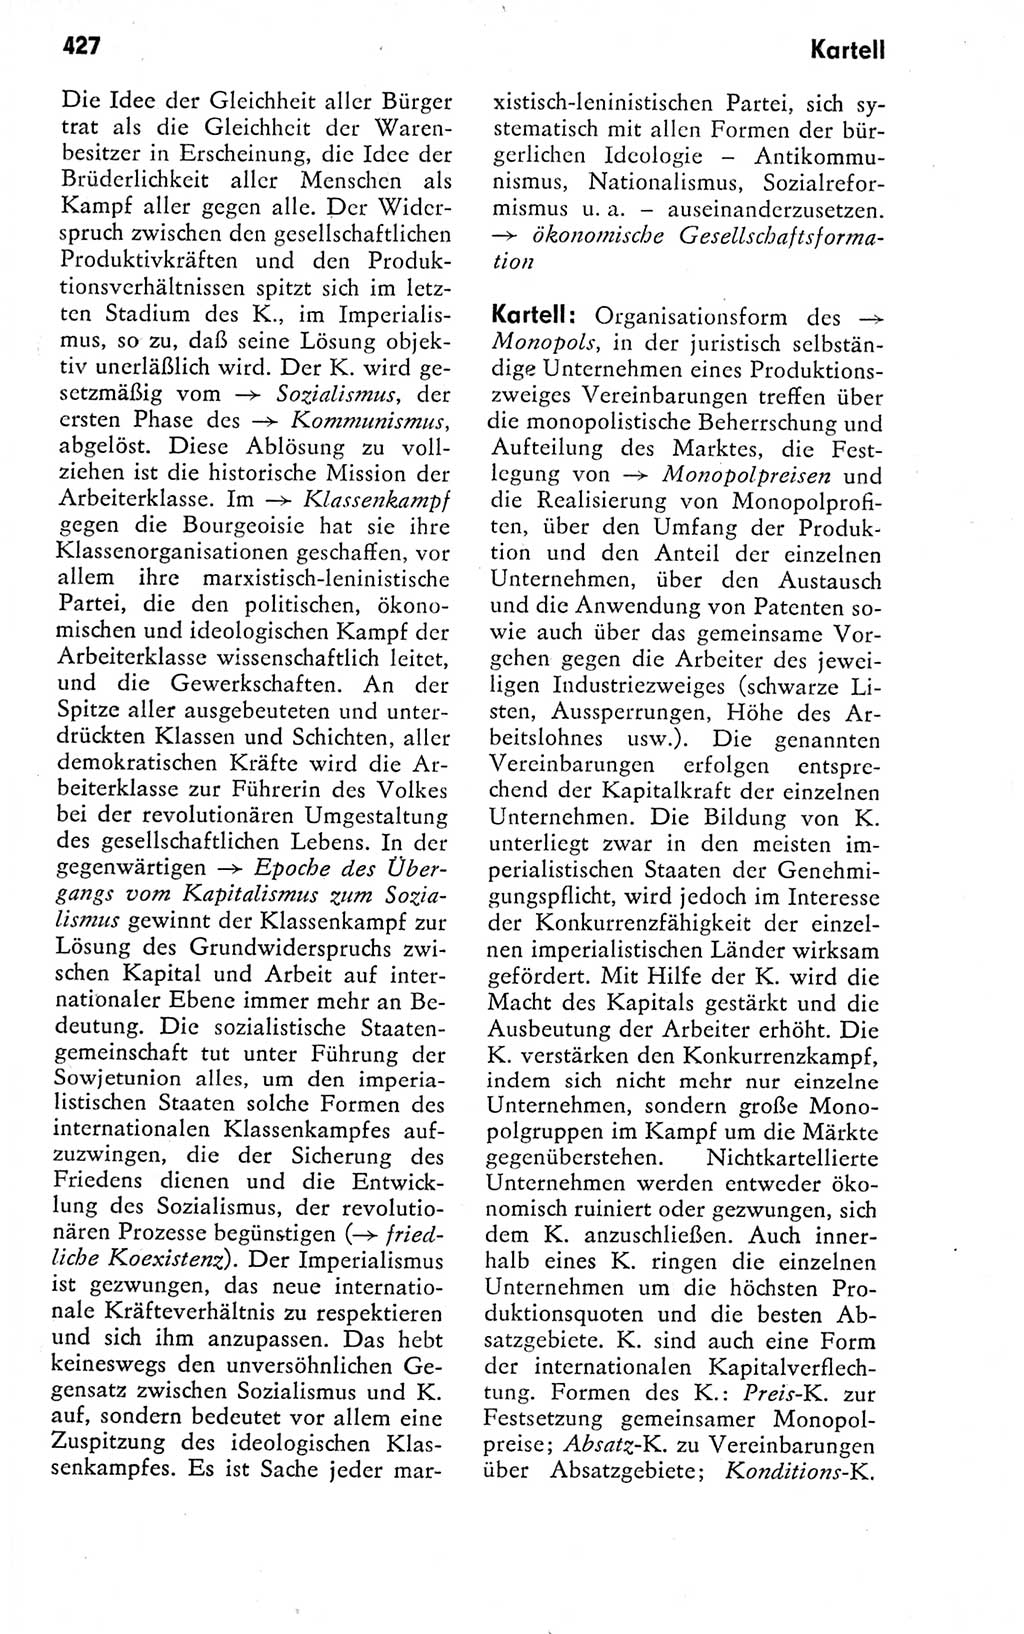 Kleines politisches Wörterbuch [Deutsche Demokratische Republik (DDR)] 1978, Seite 427 (Kl. pol. Wb. DDR 1978, S. 427)